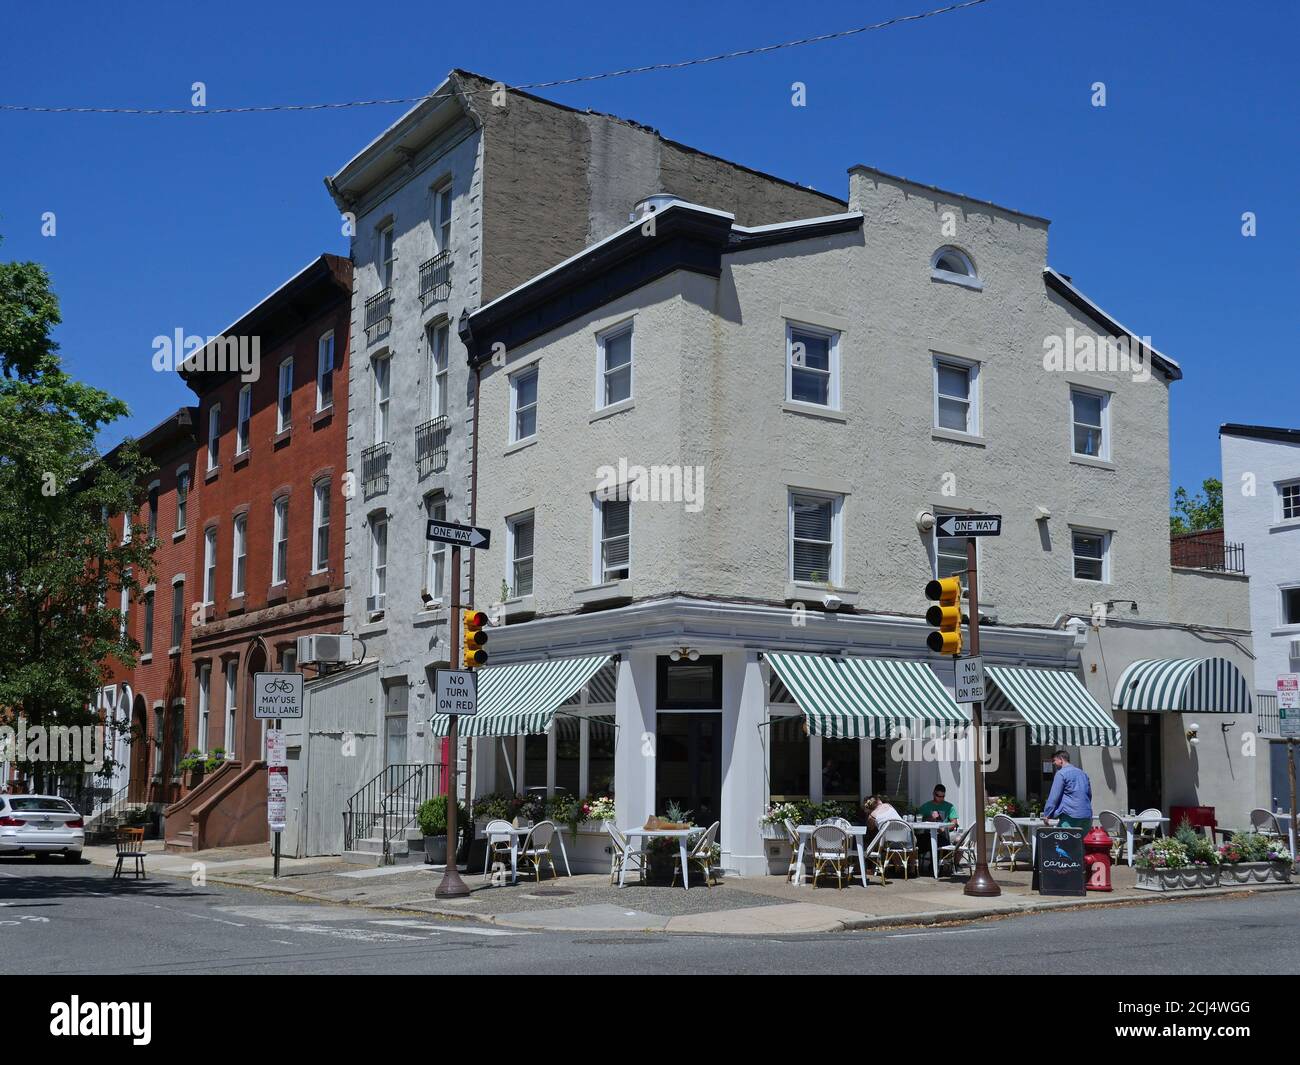 Philadelphie, USA - 27 mai 2019: Restaurant italien avec tables extérieures dans une zone de maisons du XIXe siècle près de la place Rittenhouse. Banque D'Images